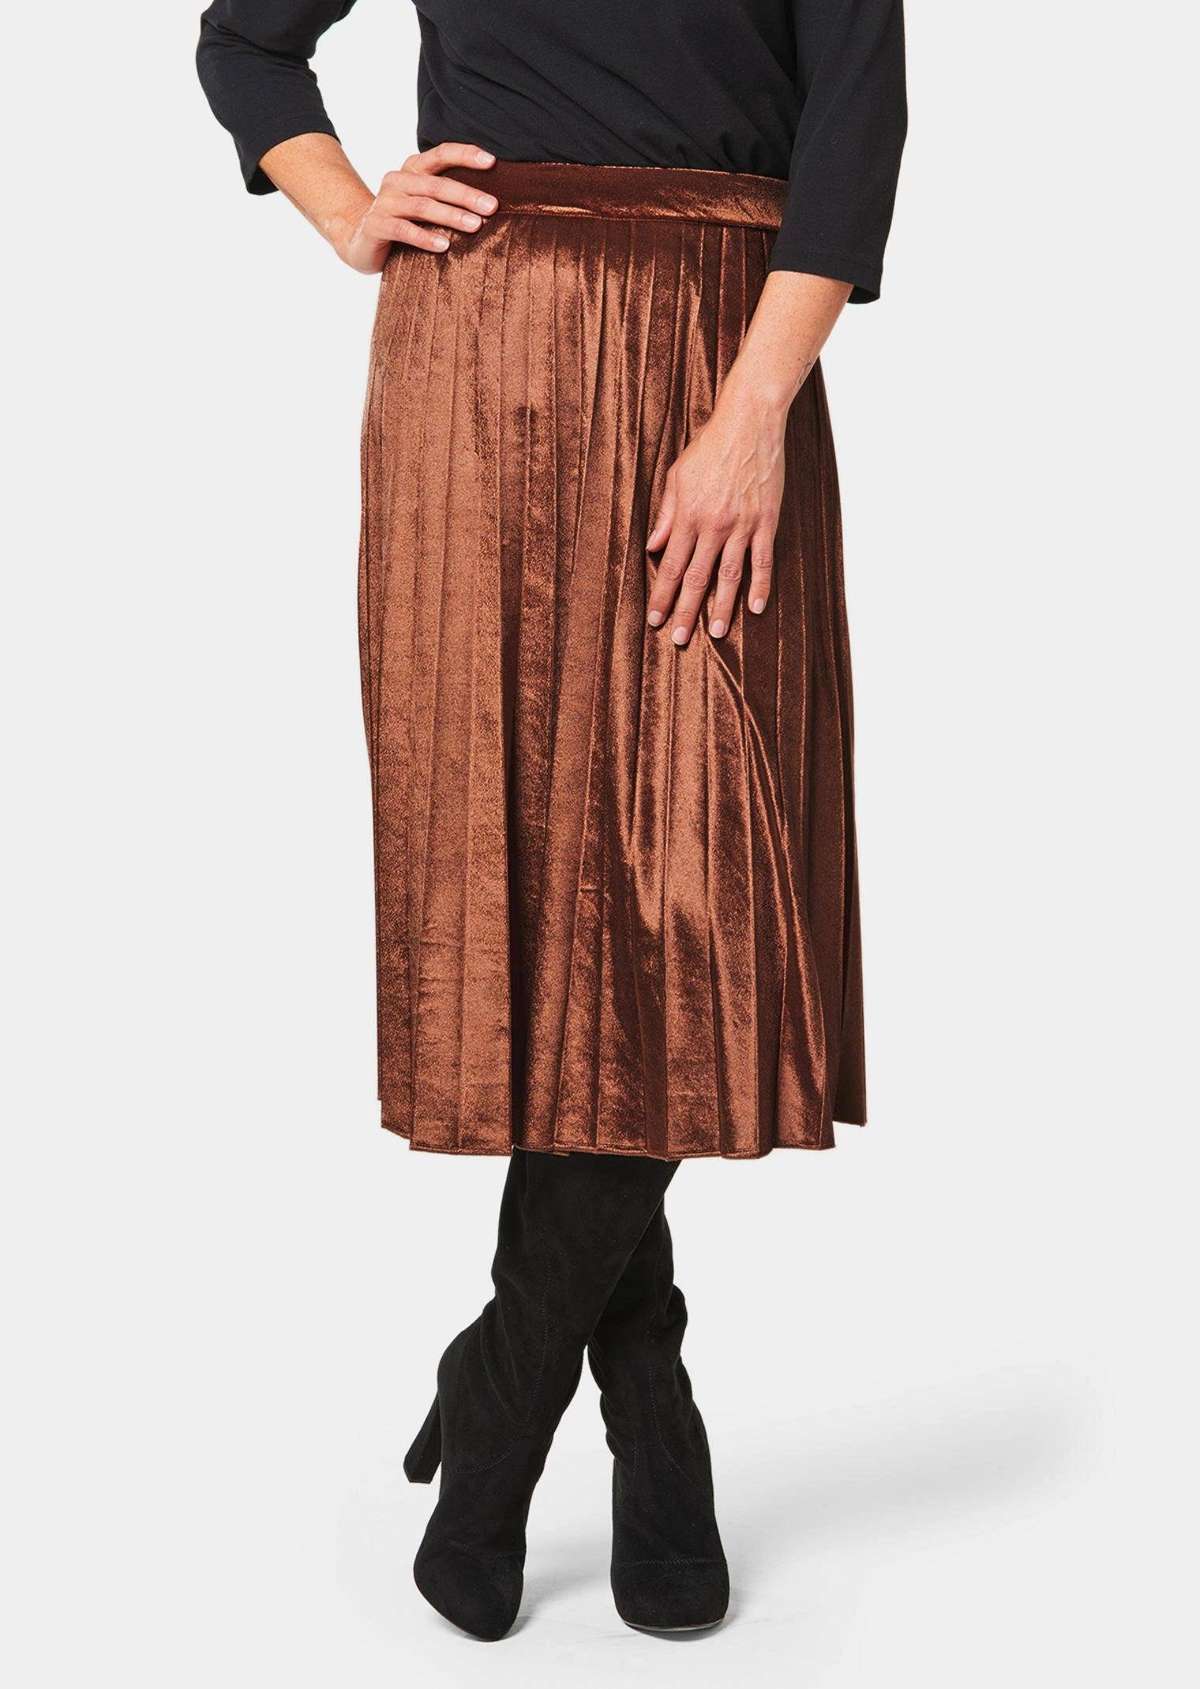 Юбка-комбинация короткого размера: плиссированная юбка из мерцающего бархата.